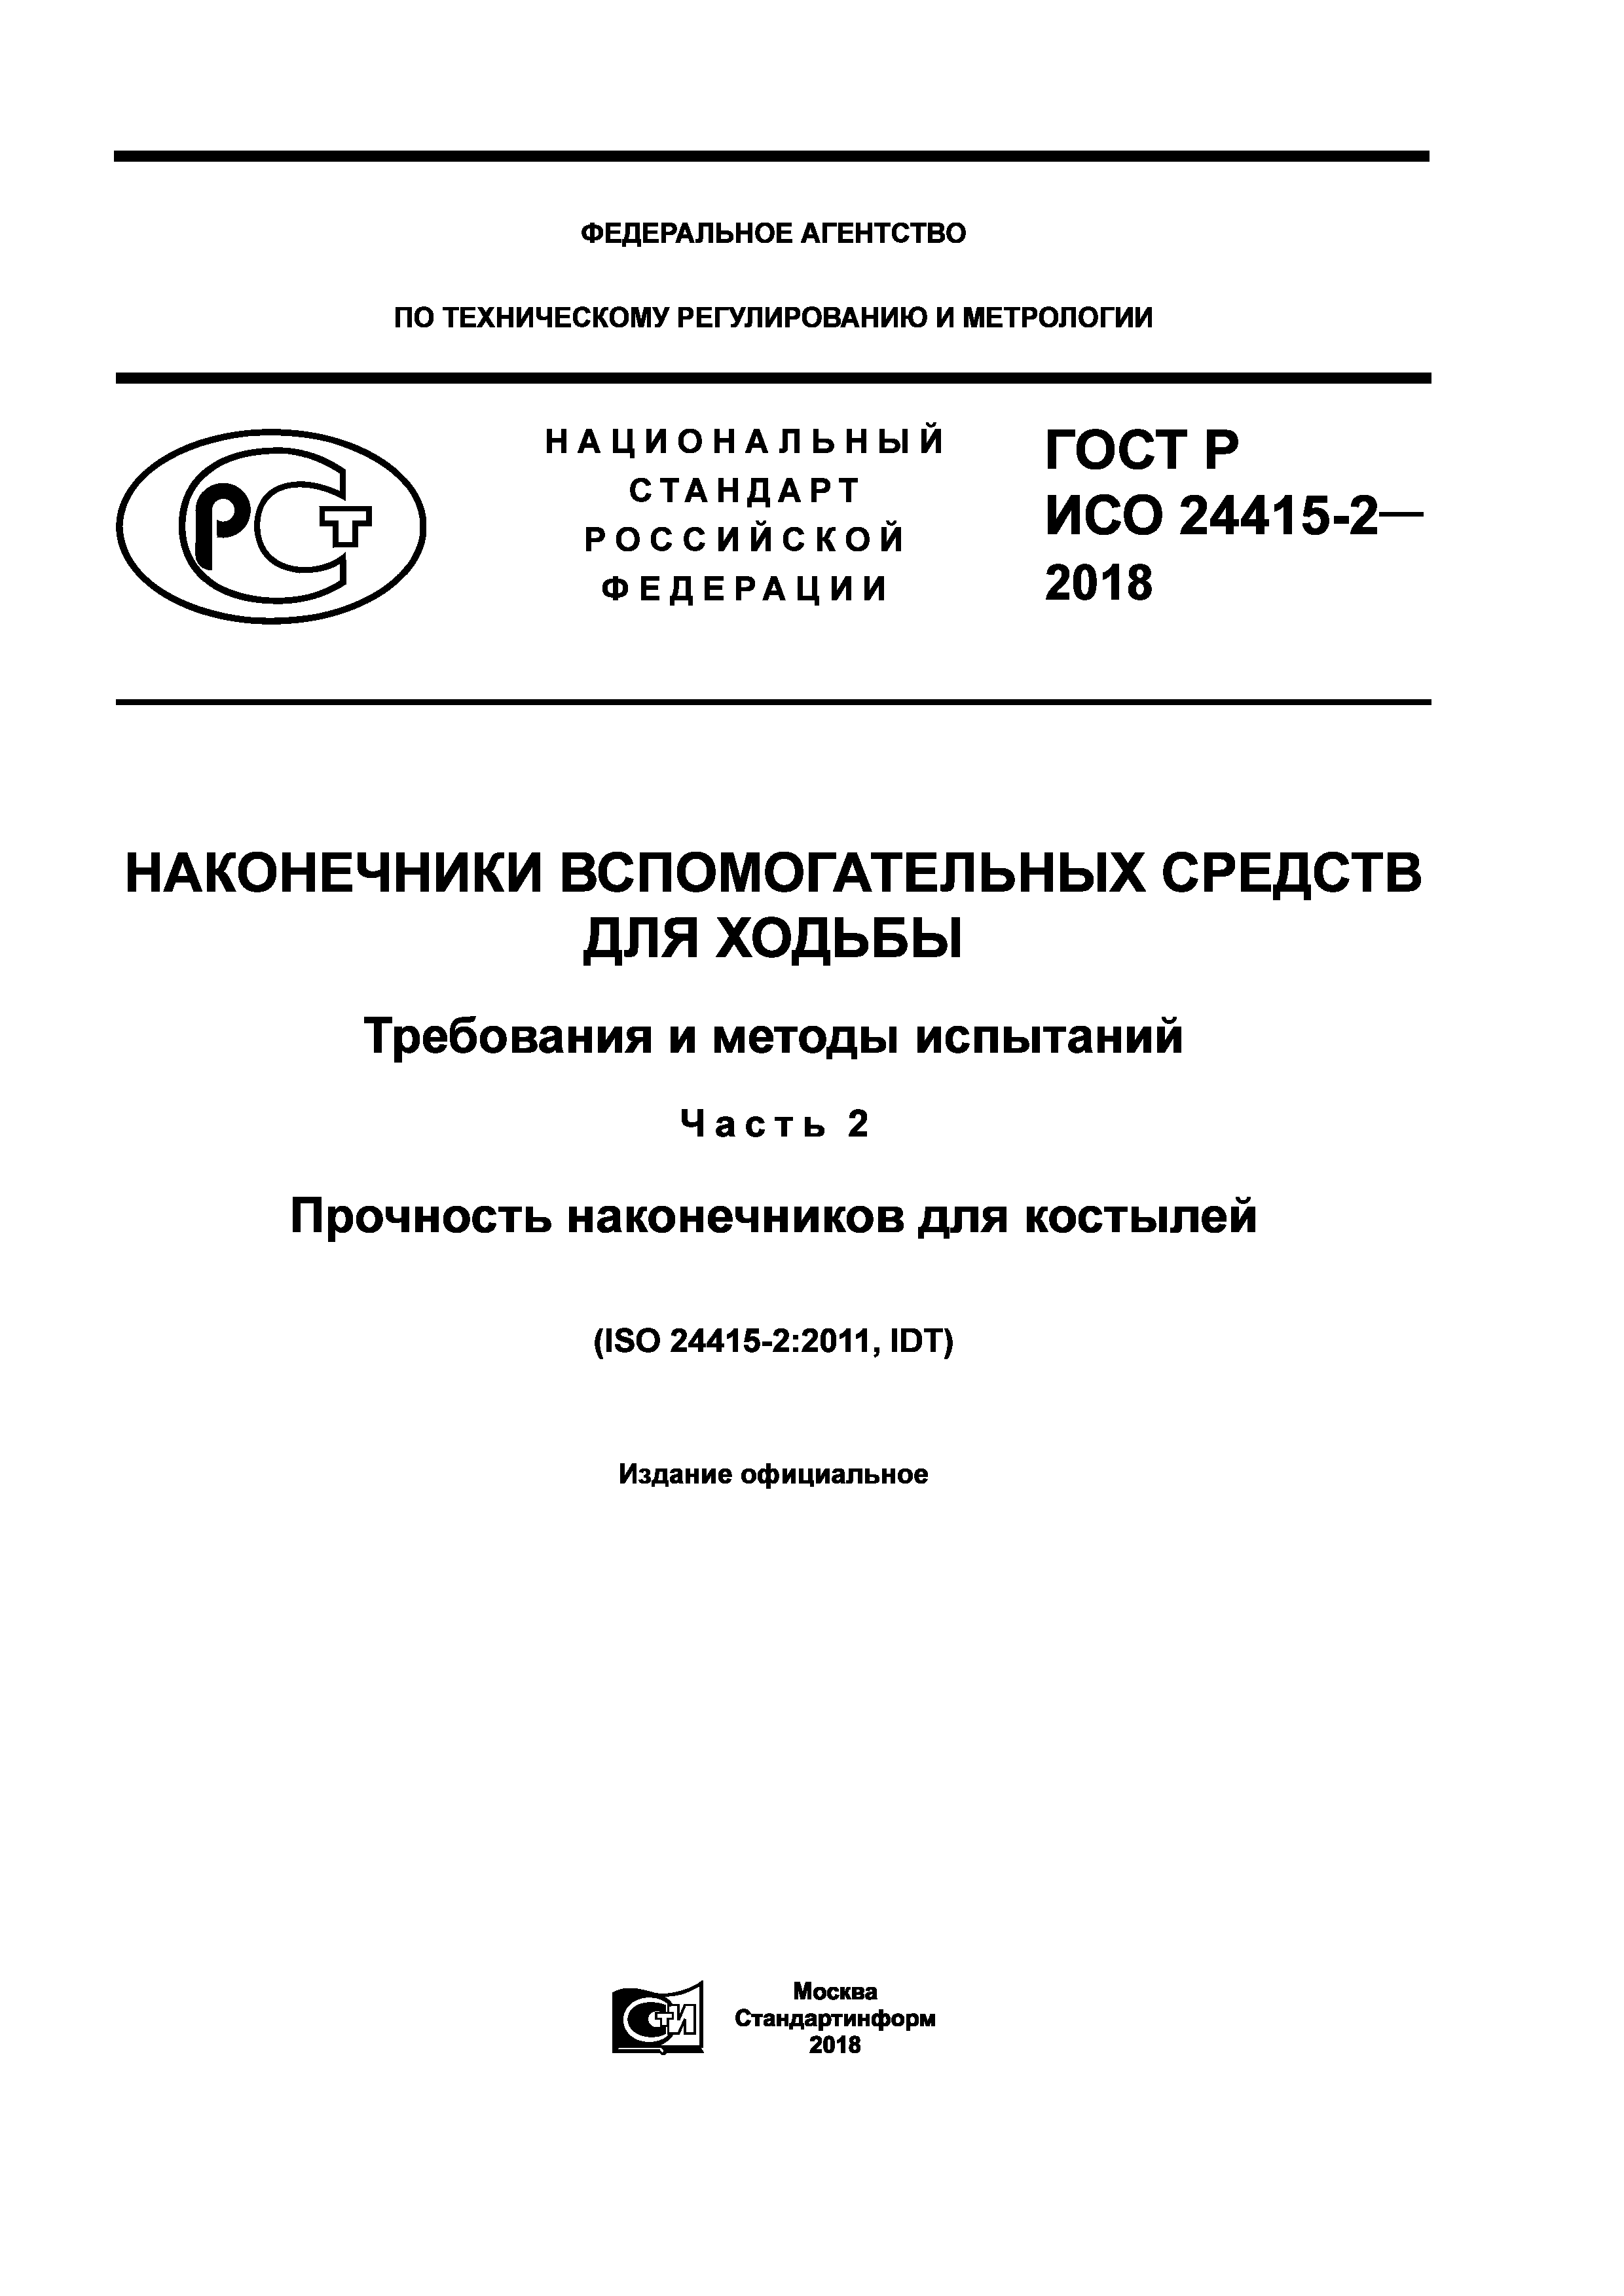 ГОСТ Р ИСО 24415-2-2018